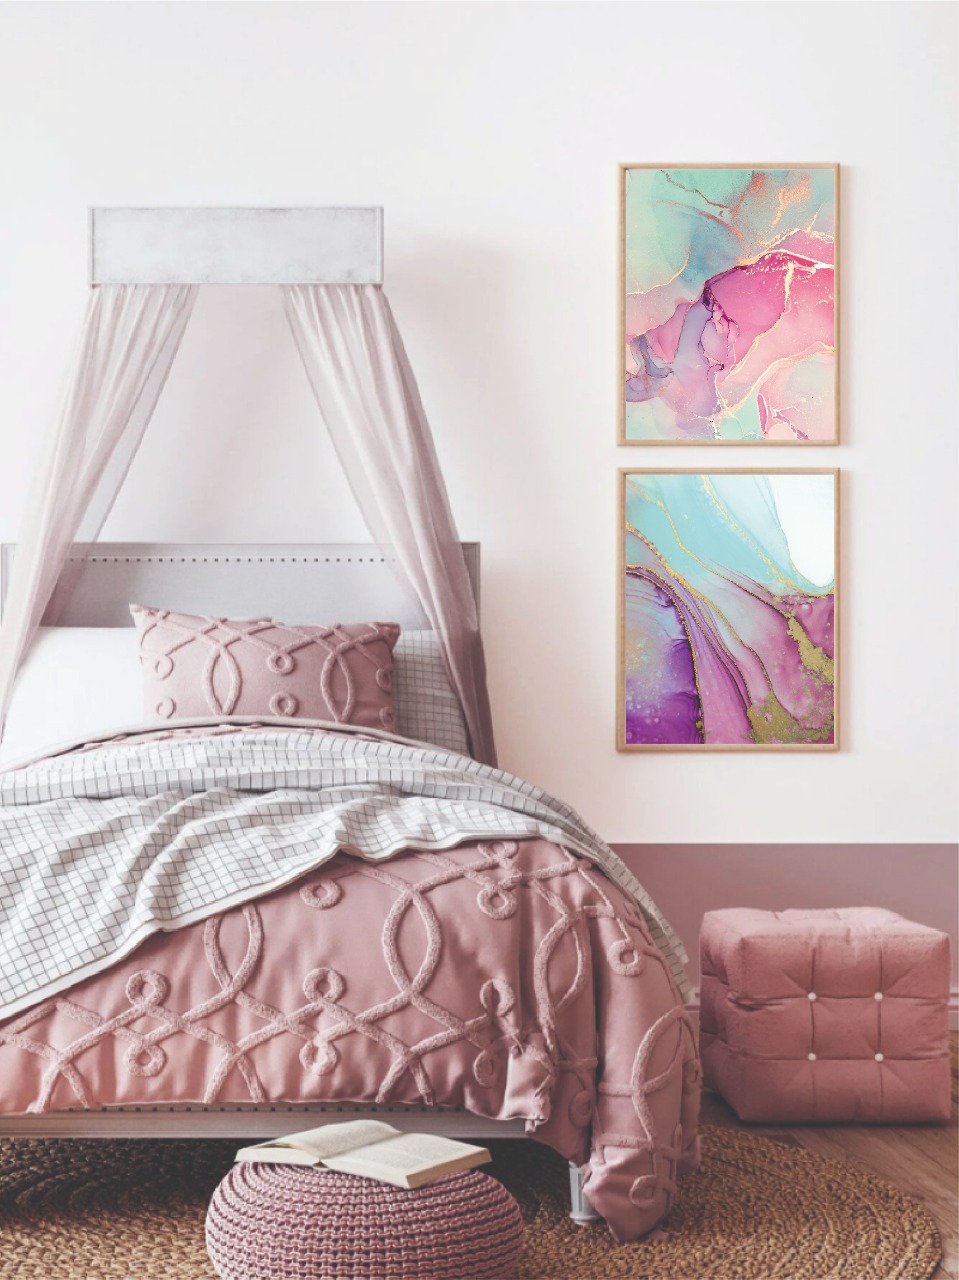  cuadros dormitorio, pareja, 33x43 cm rosado, celeste y morado. 20